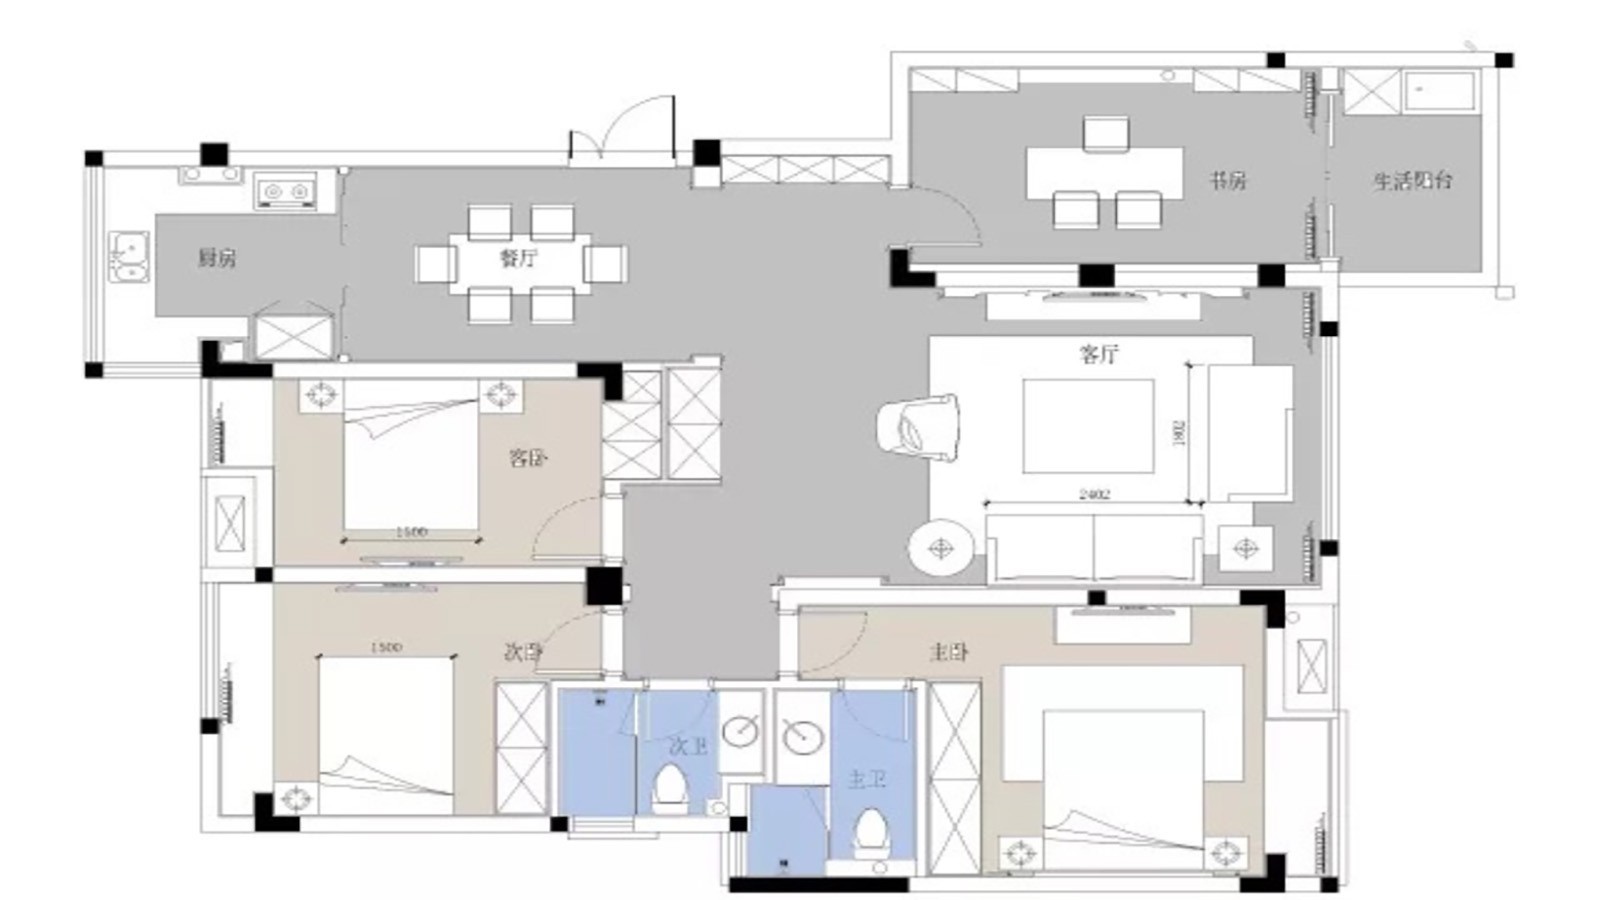 121现代三房装修效果图,一场圆梦之旅的开始装修案例效果图-美广网(图1)